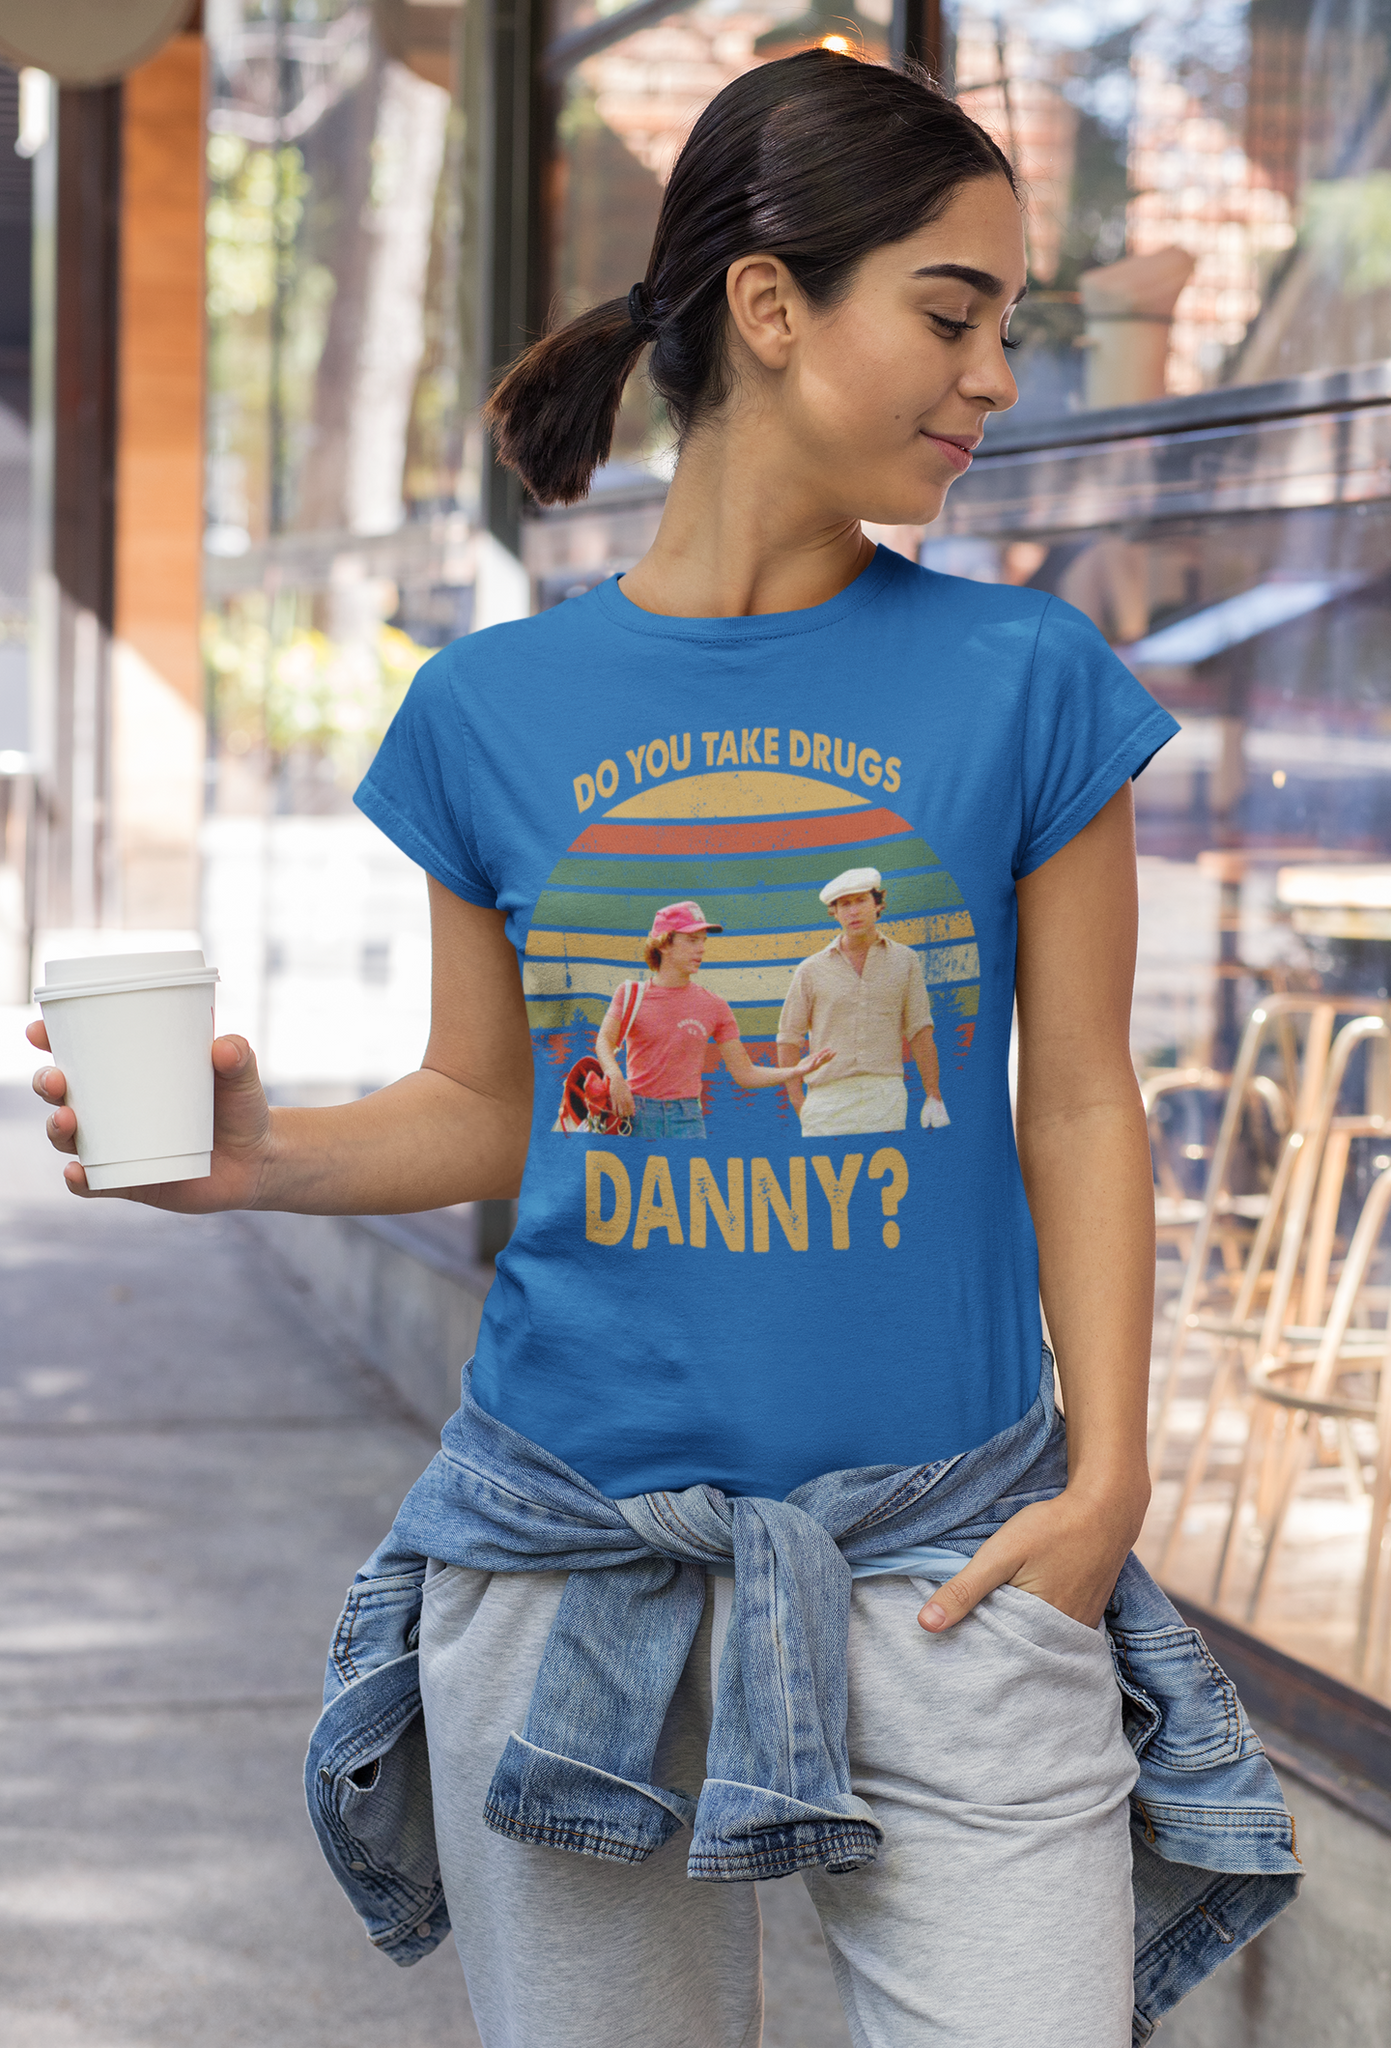 Caddyshack Vintage T Shirt, Ty Webb Danny Noonan T Shirt, Do You Take Drugs Danny Tshirt